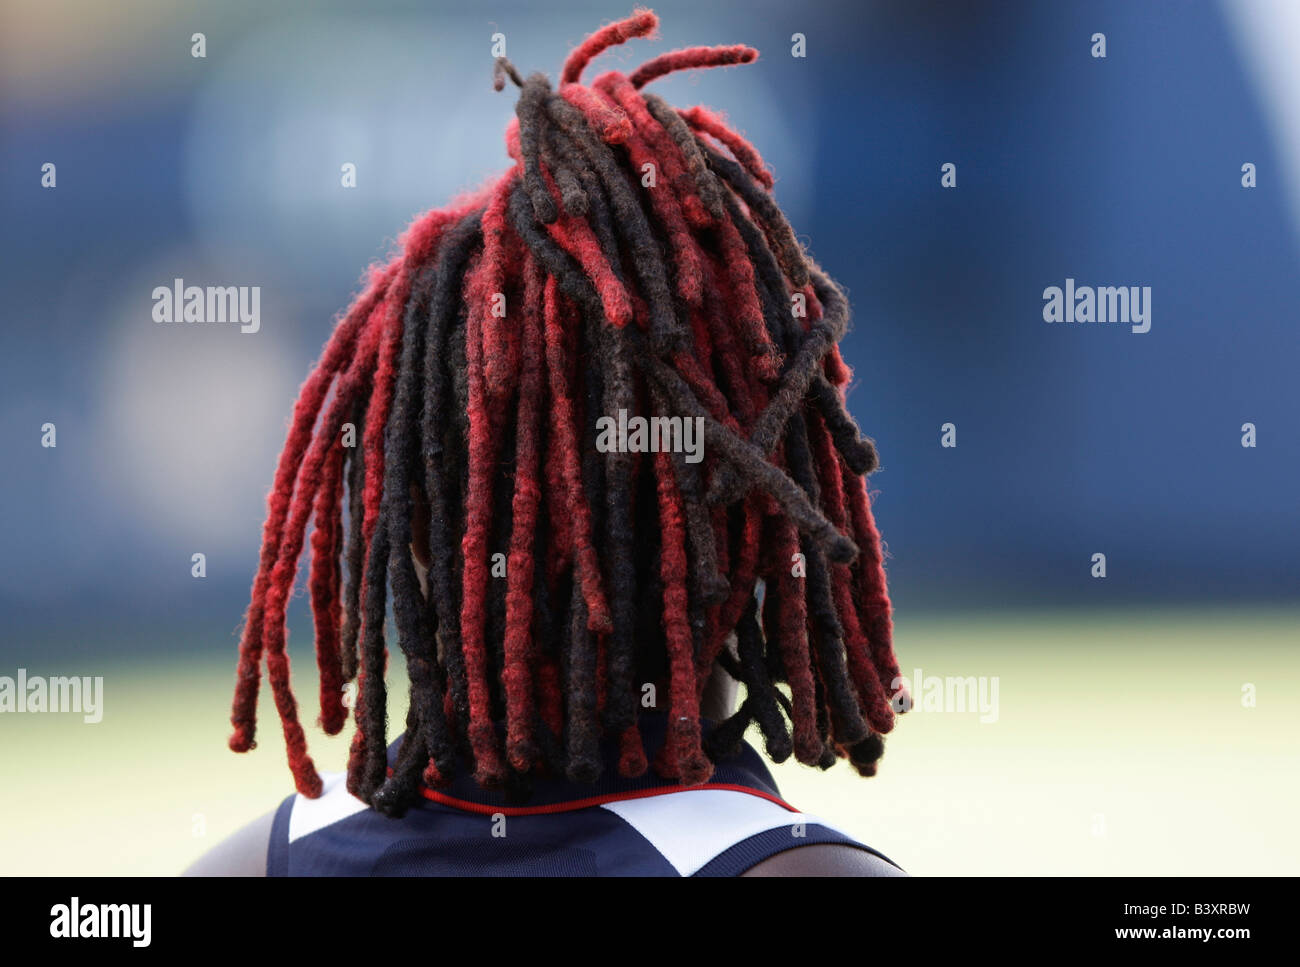 Rasta hairstyle immagini e fotografie stock ad alta risoluzione - Alamy